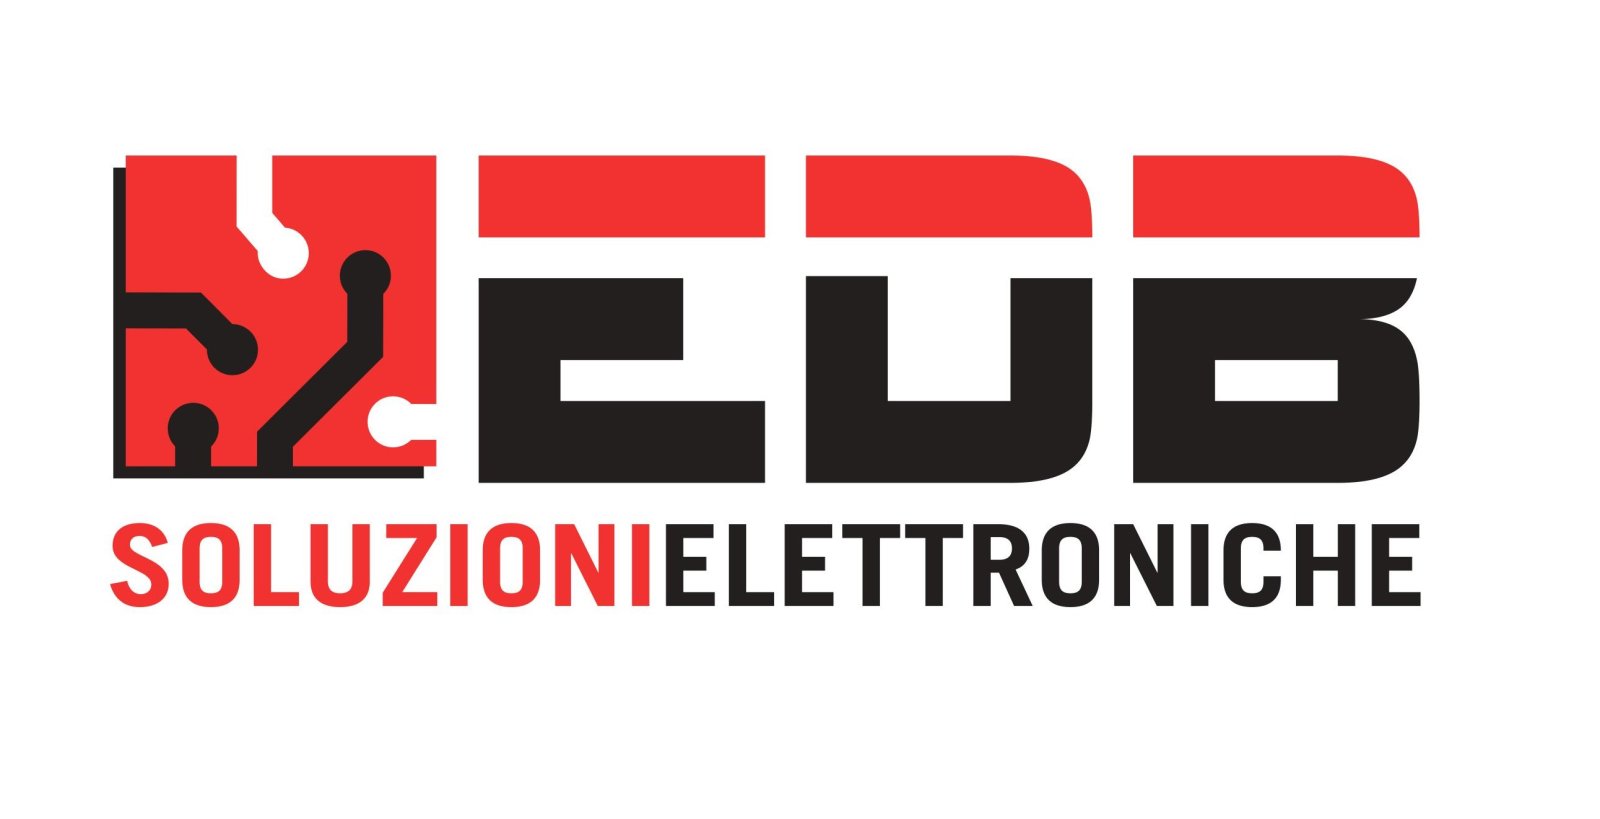 Logo EDB soluzioni elettroniche